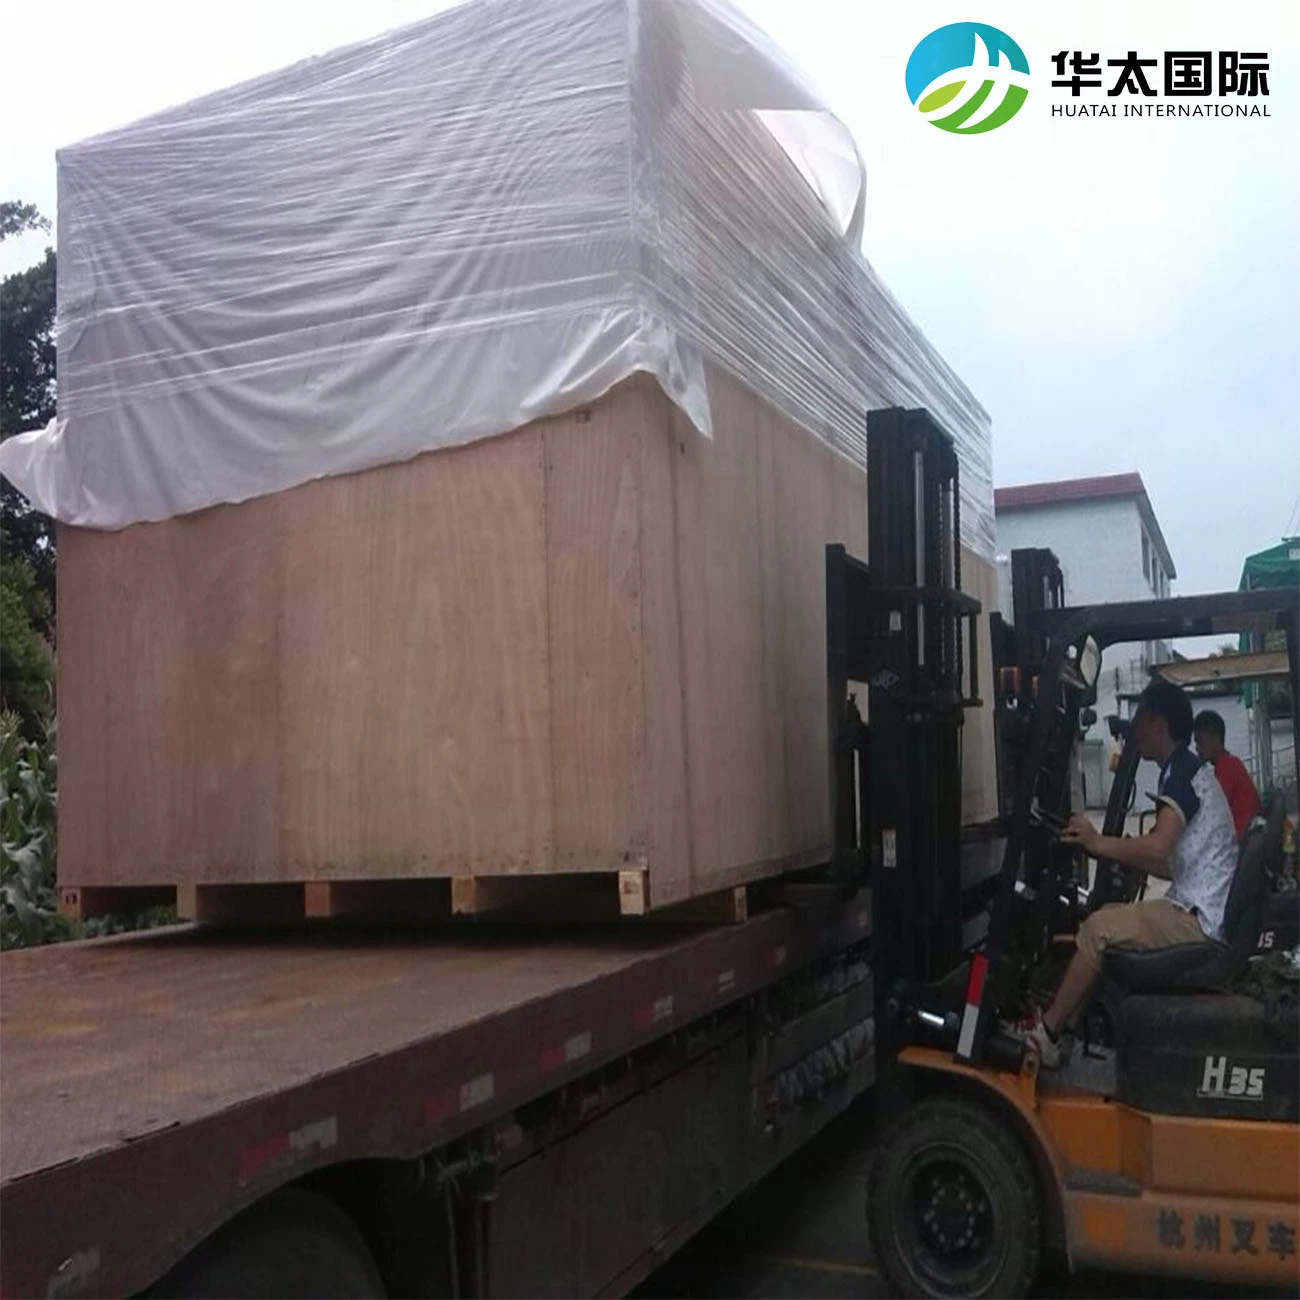 Da China ao Reino Unido Logística Internacional Transporte de carga Grande Transporte de Transporte Carga